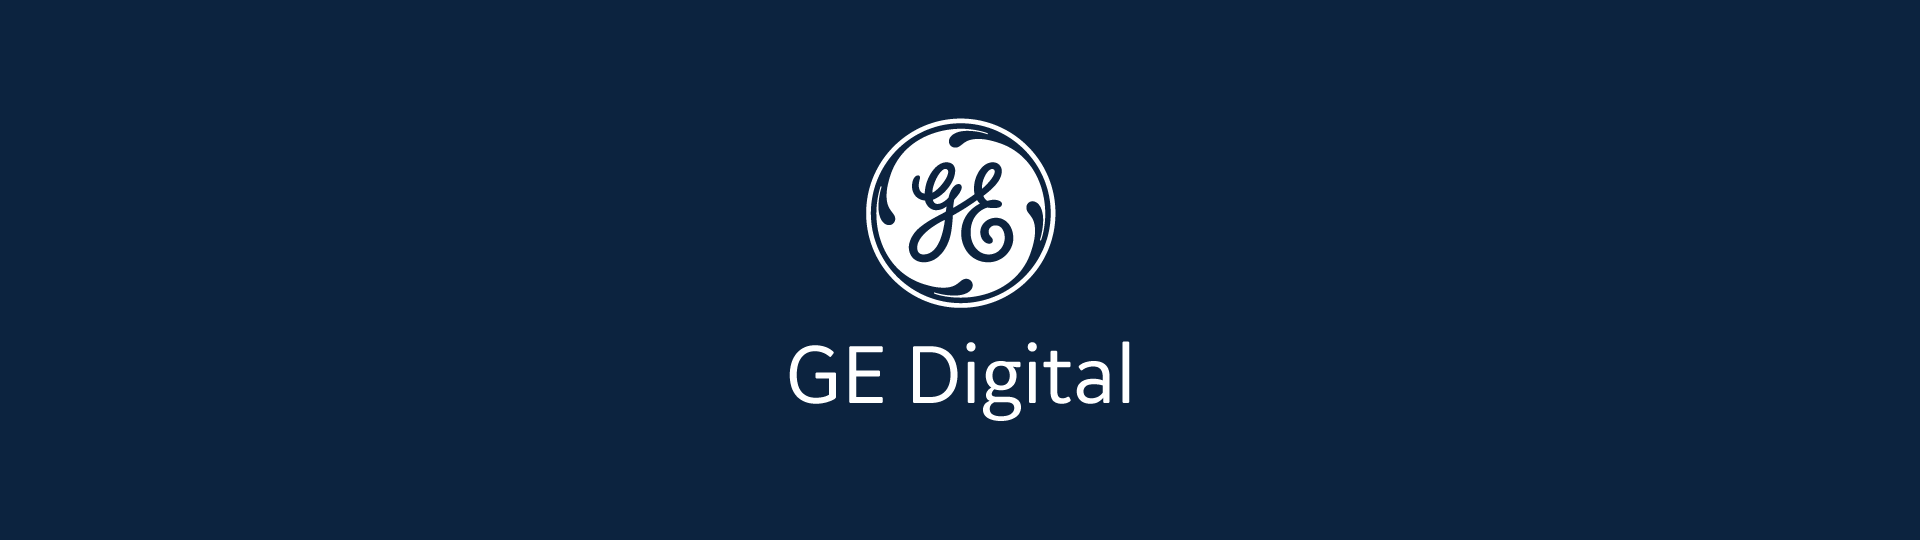 GE Digital Aviation Insight Portal